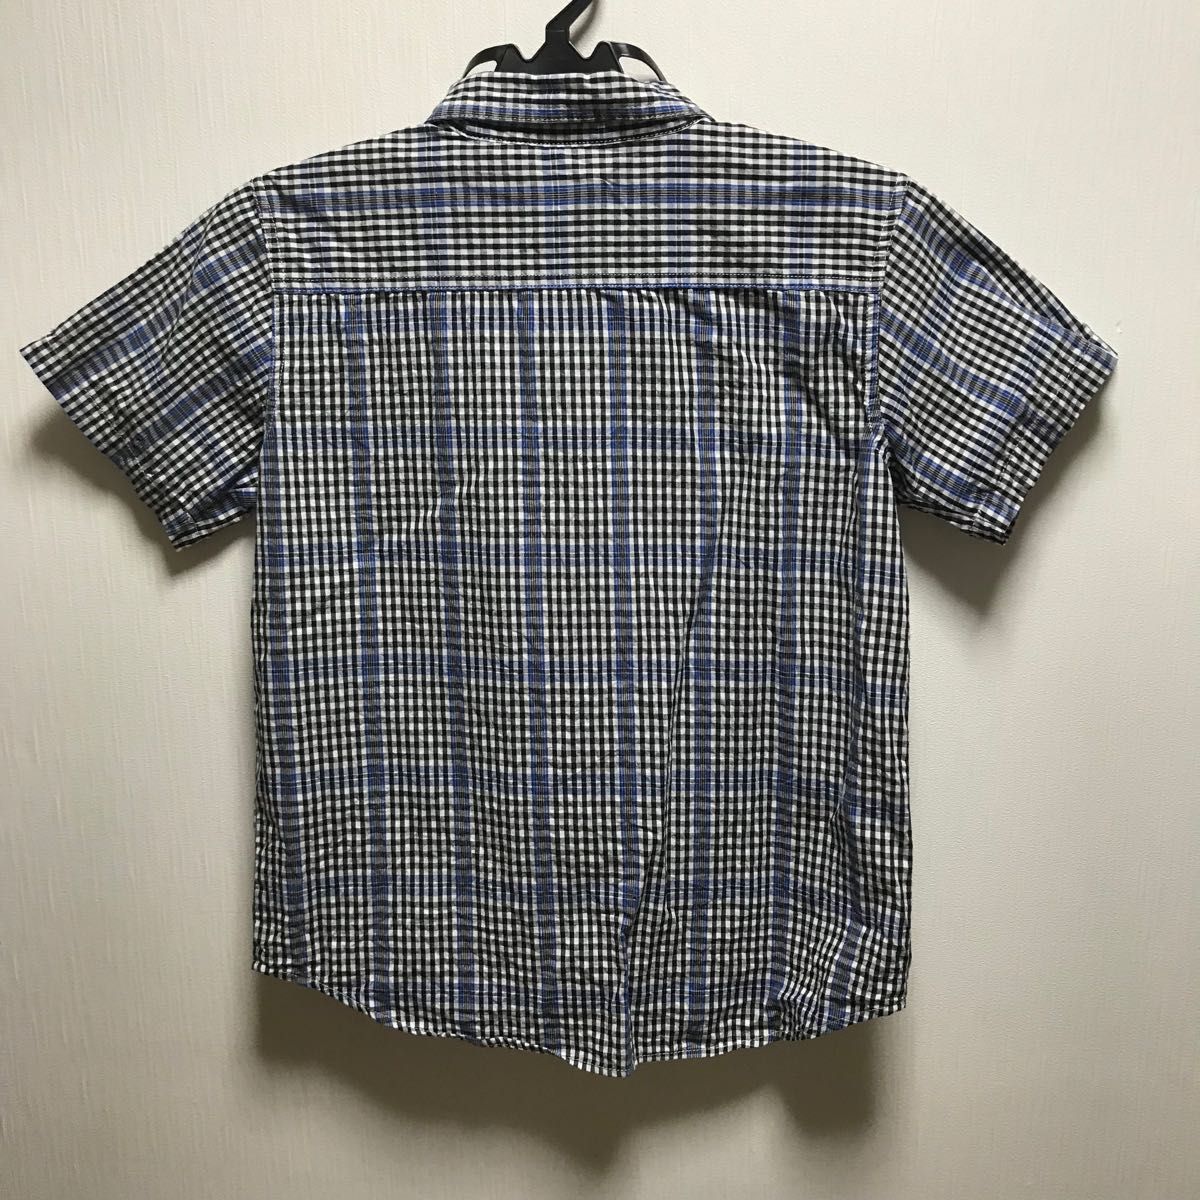 160サイズ 青×黒 ギンガムチェック ボタンシャツ